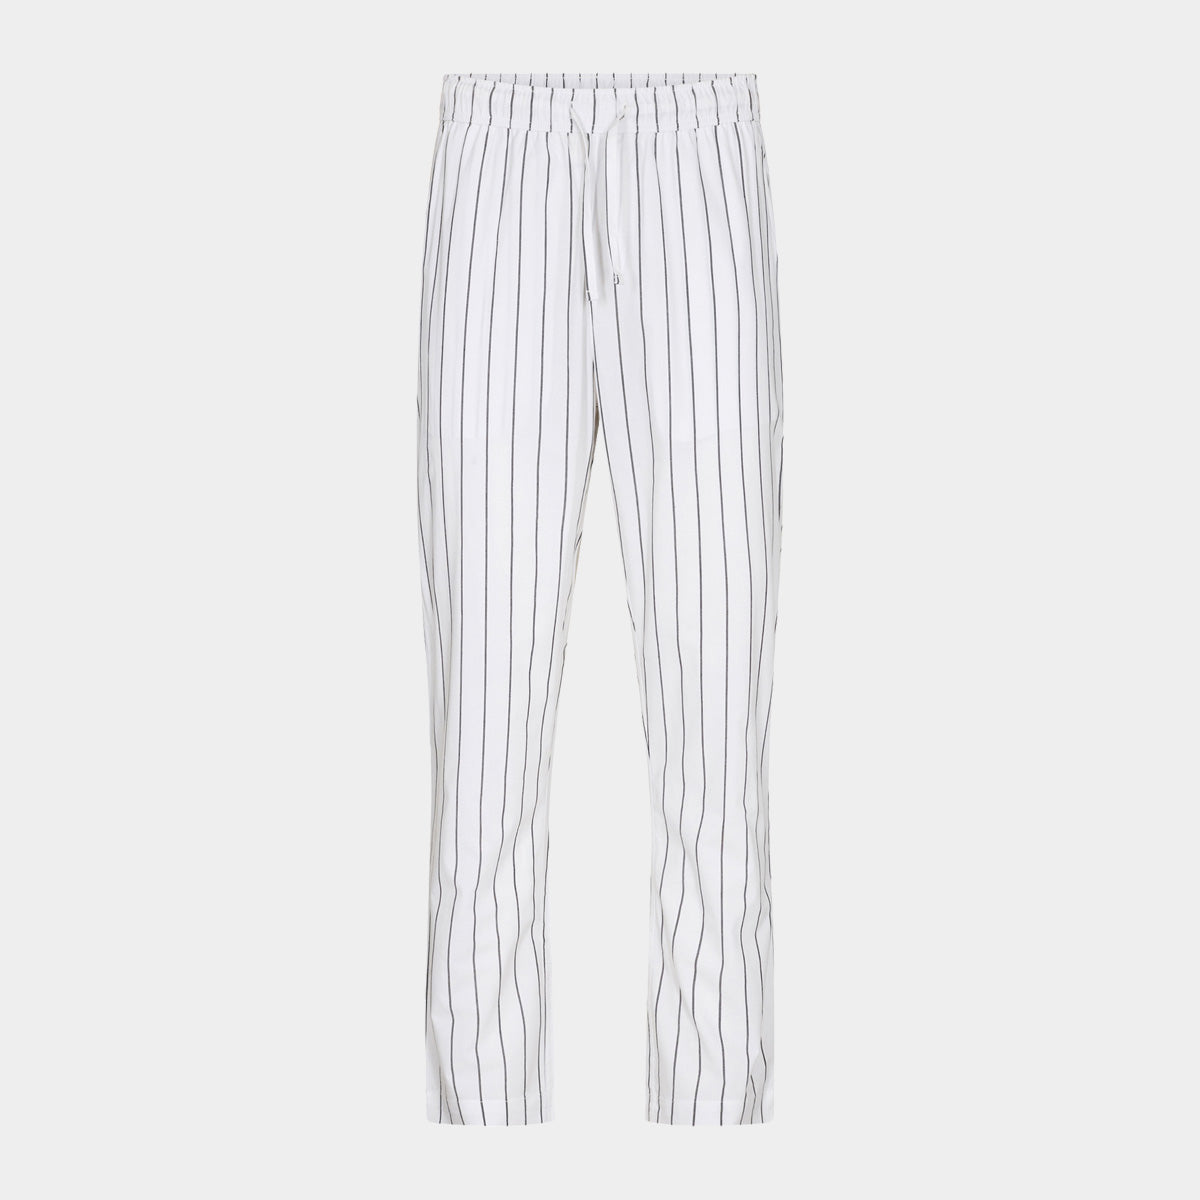 Se Hvide bambus pyjamasbukser med smalle grå striber fra JBS of Denmark, XXXL hos Bambustøj.dk